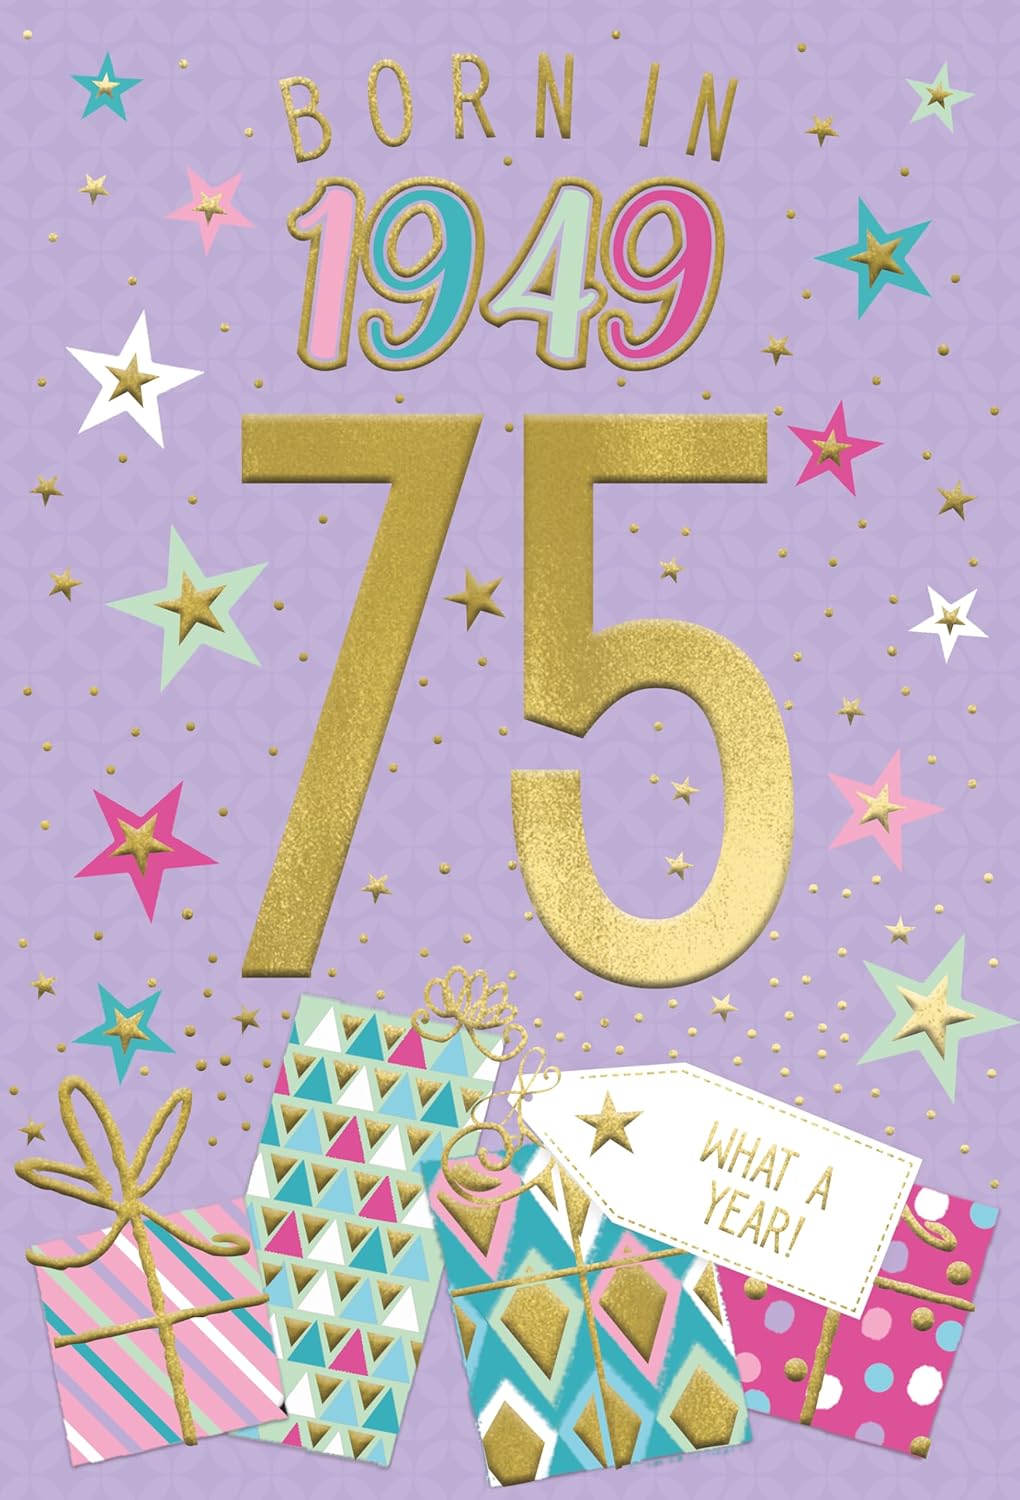 Year You Were Born Greeting Card Tri Fold - Age 75 - 75th Female Birthday